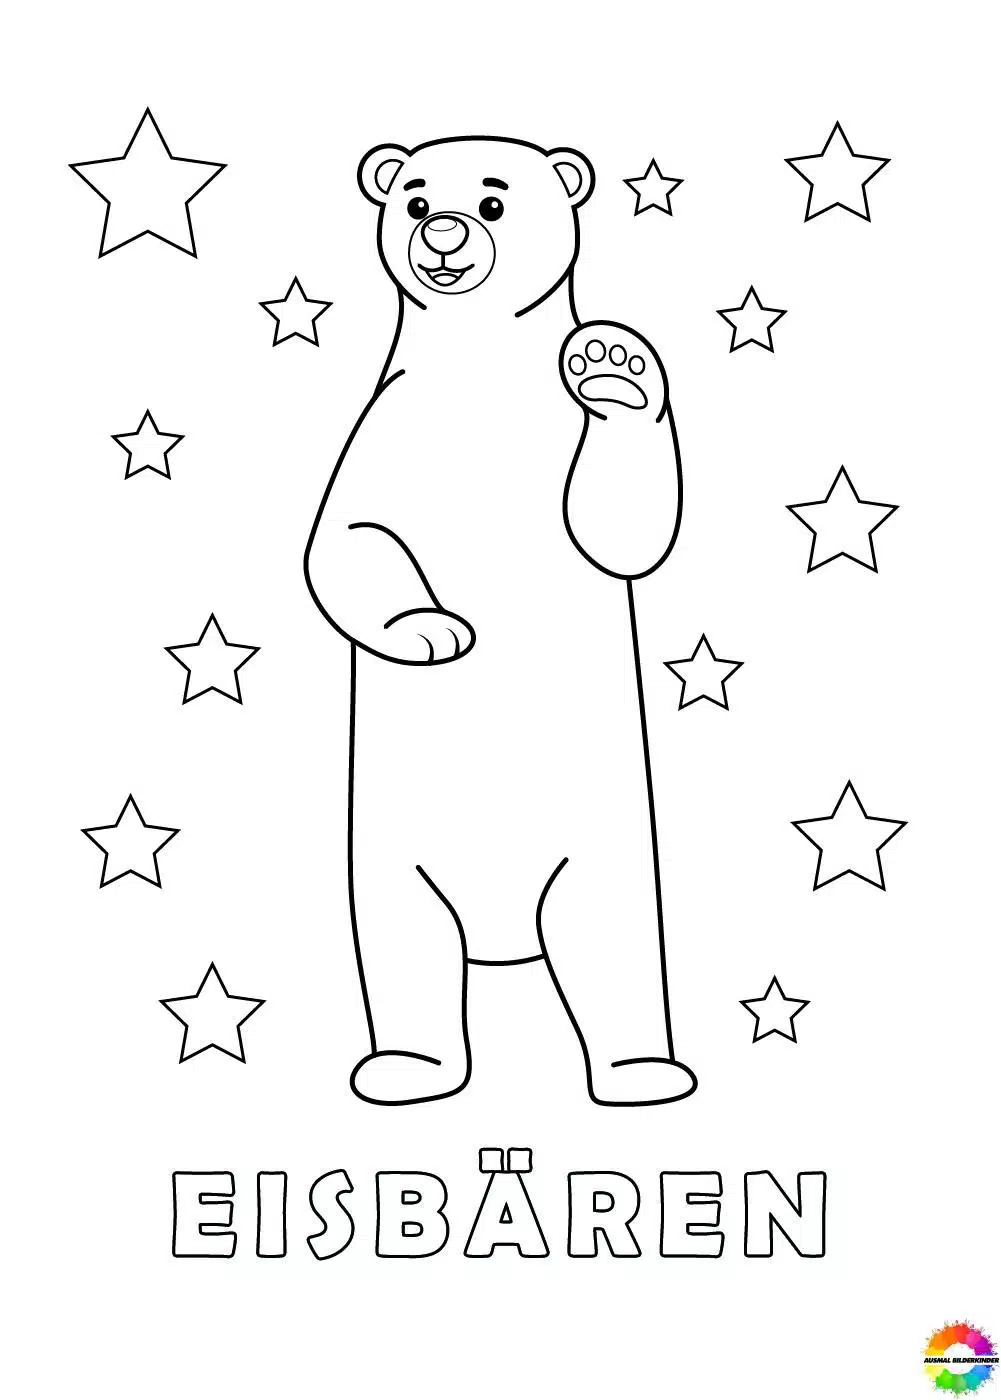 Eisbären 05